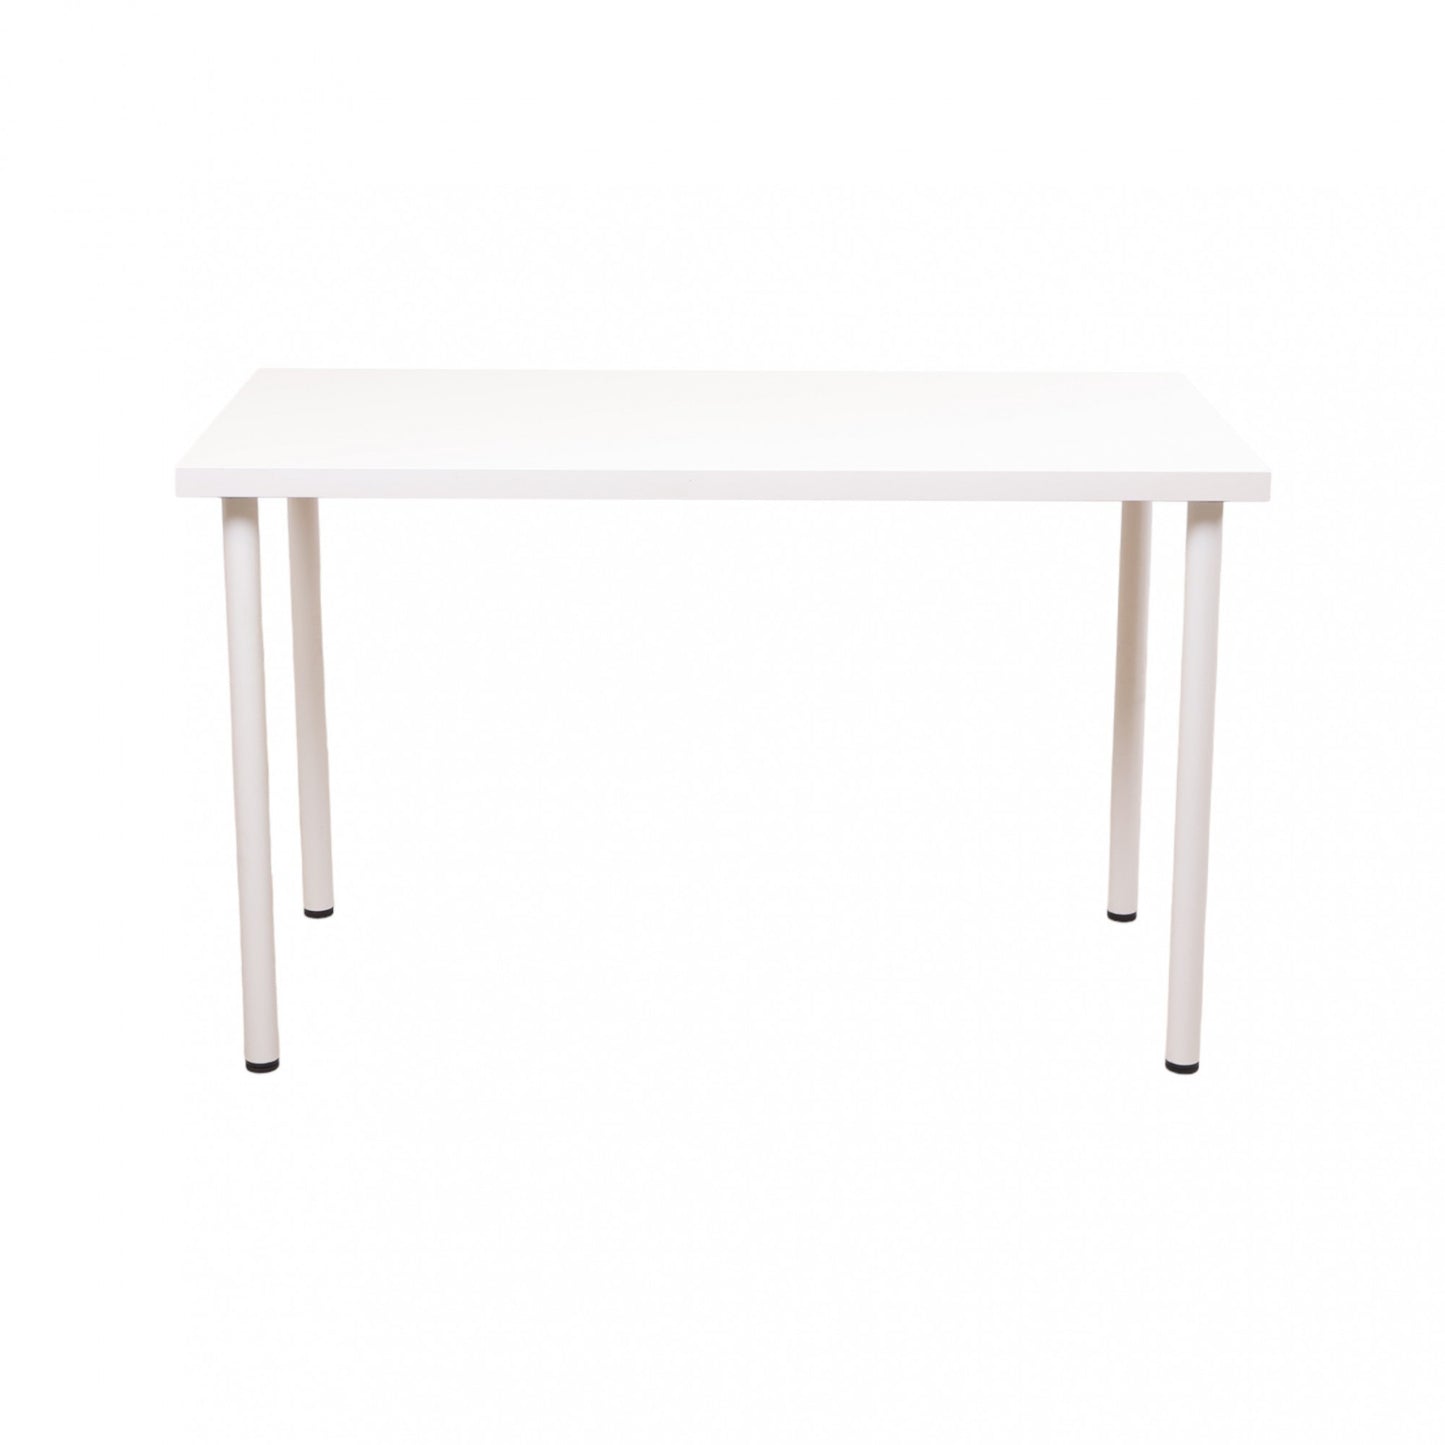 100x60 cm, IKEA LINNMON/ADILS helhvit skrivebord